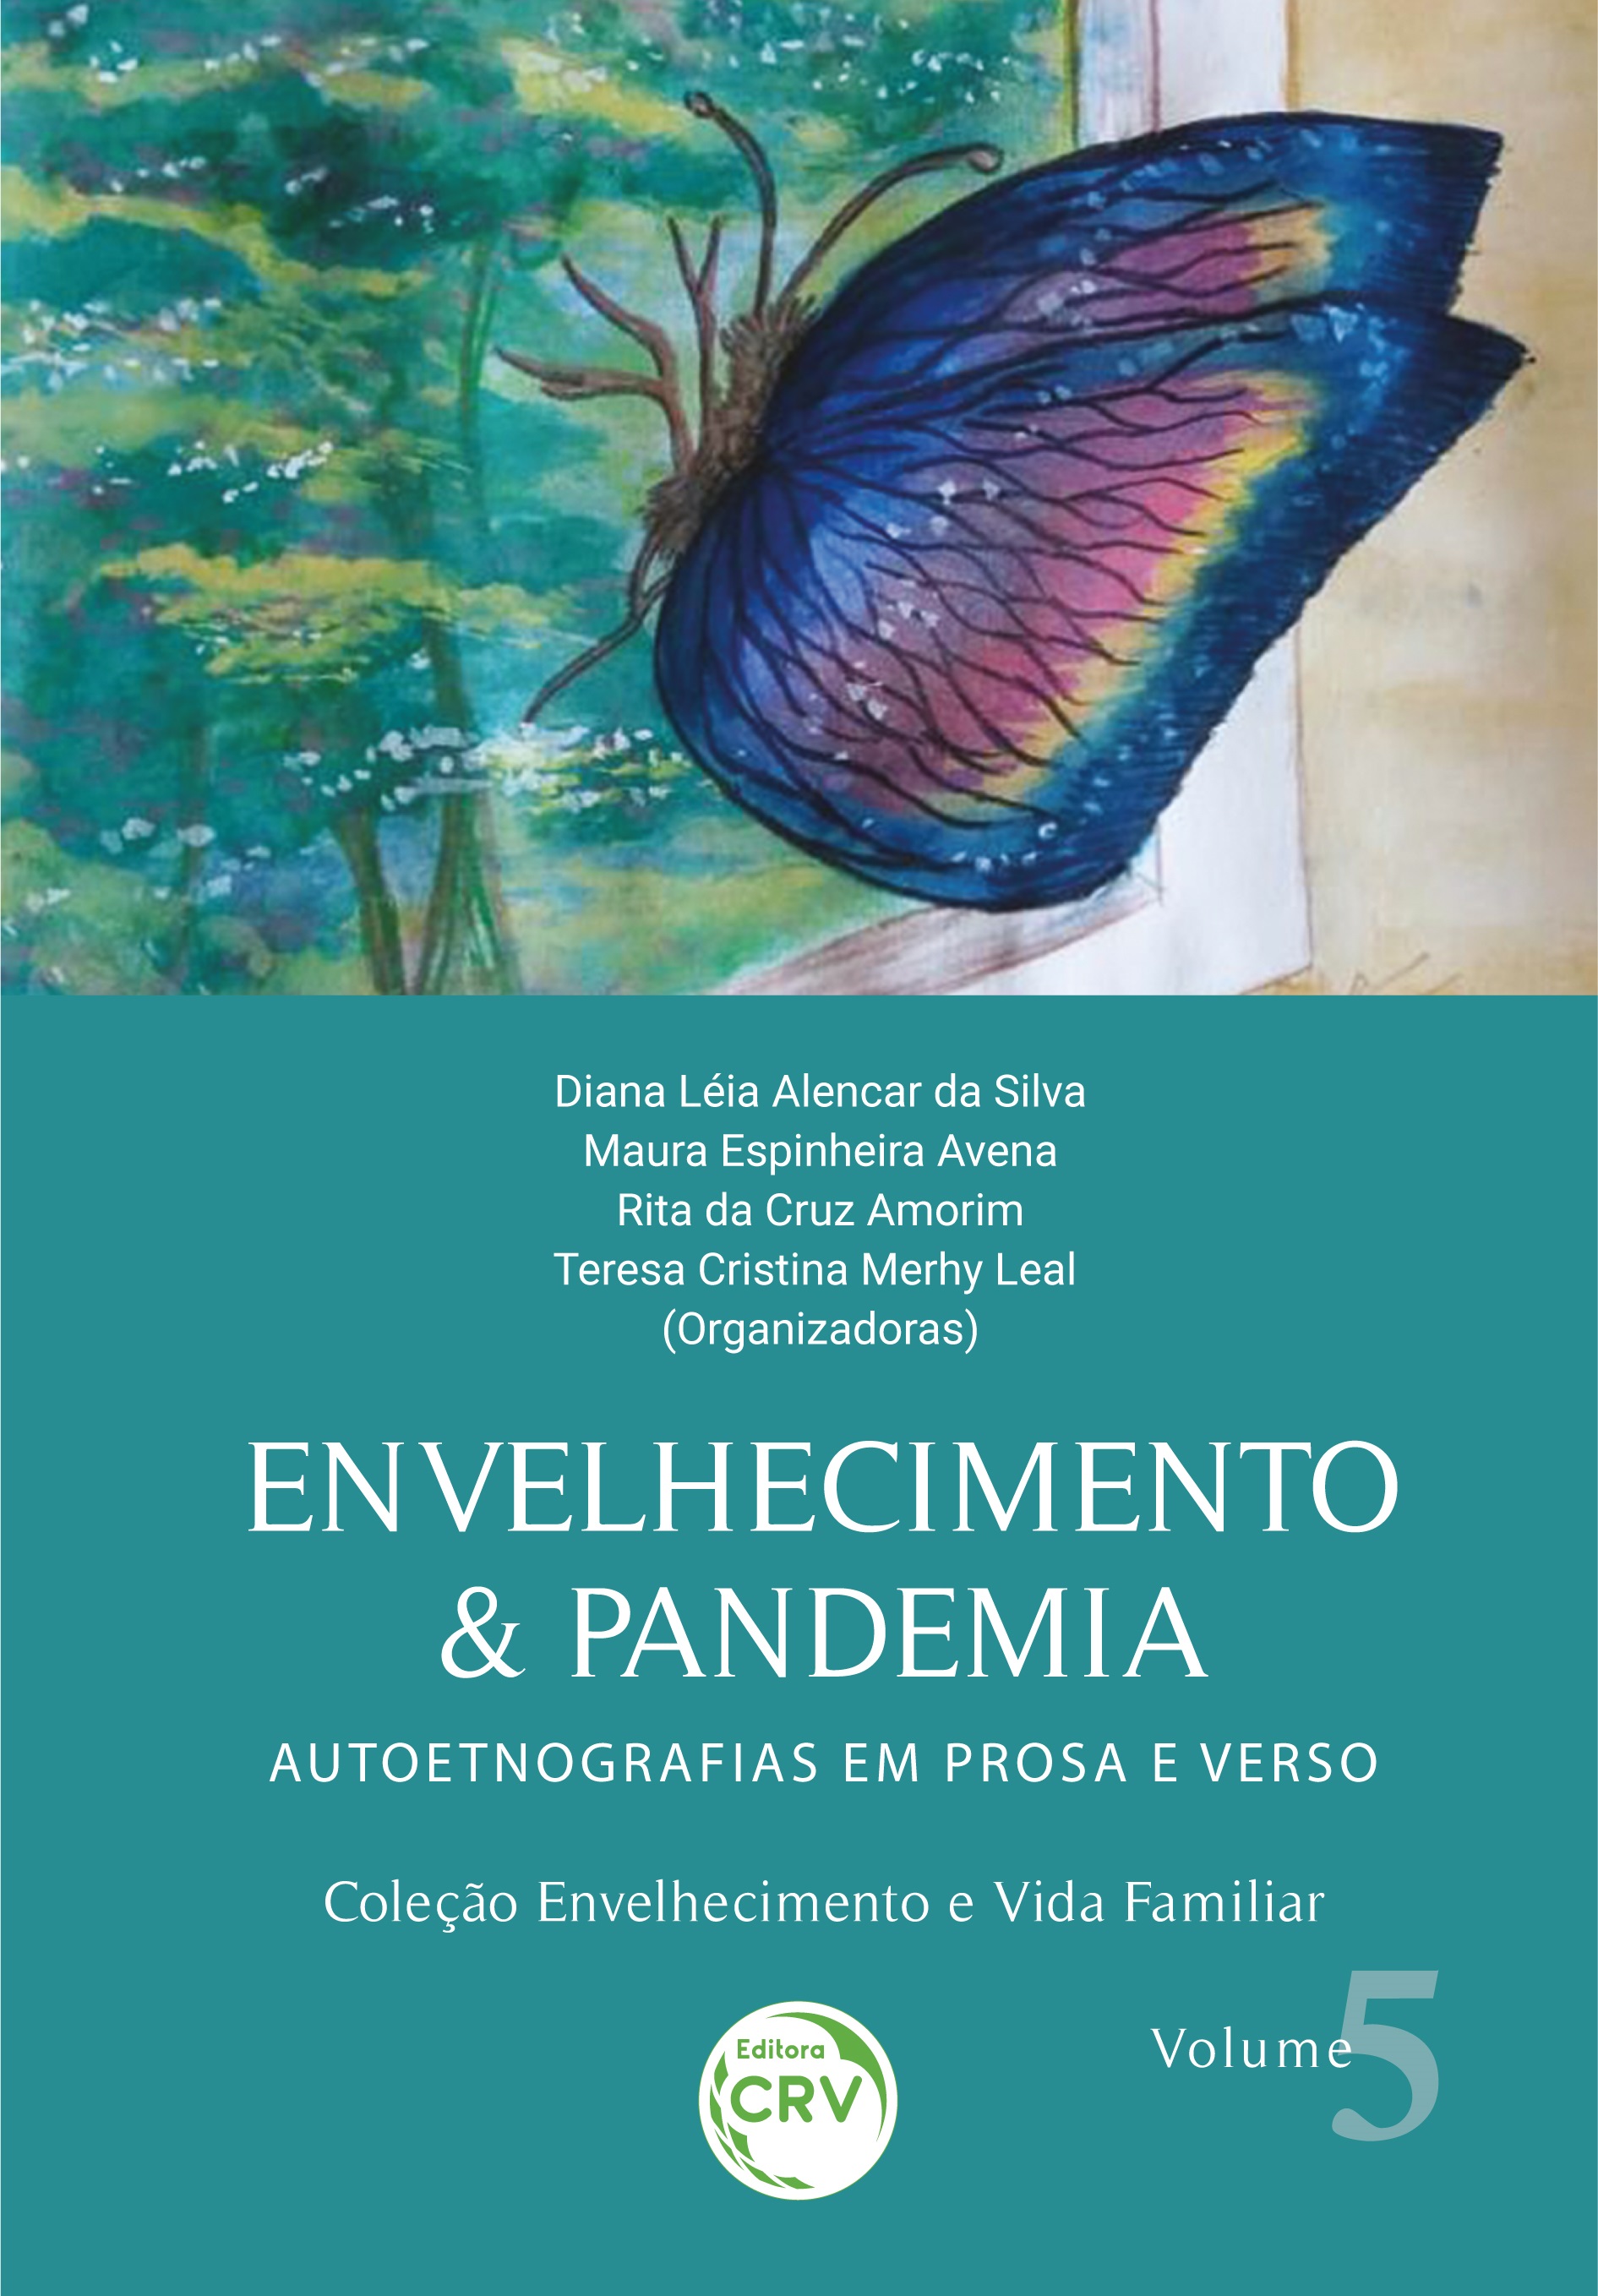 ENVELHECIMENTO & PANDEMIA: <br>autoetnografias em prosa e verso <br>Coleção Envelhecimento e Vida Familiar<br> Volume 5